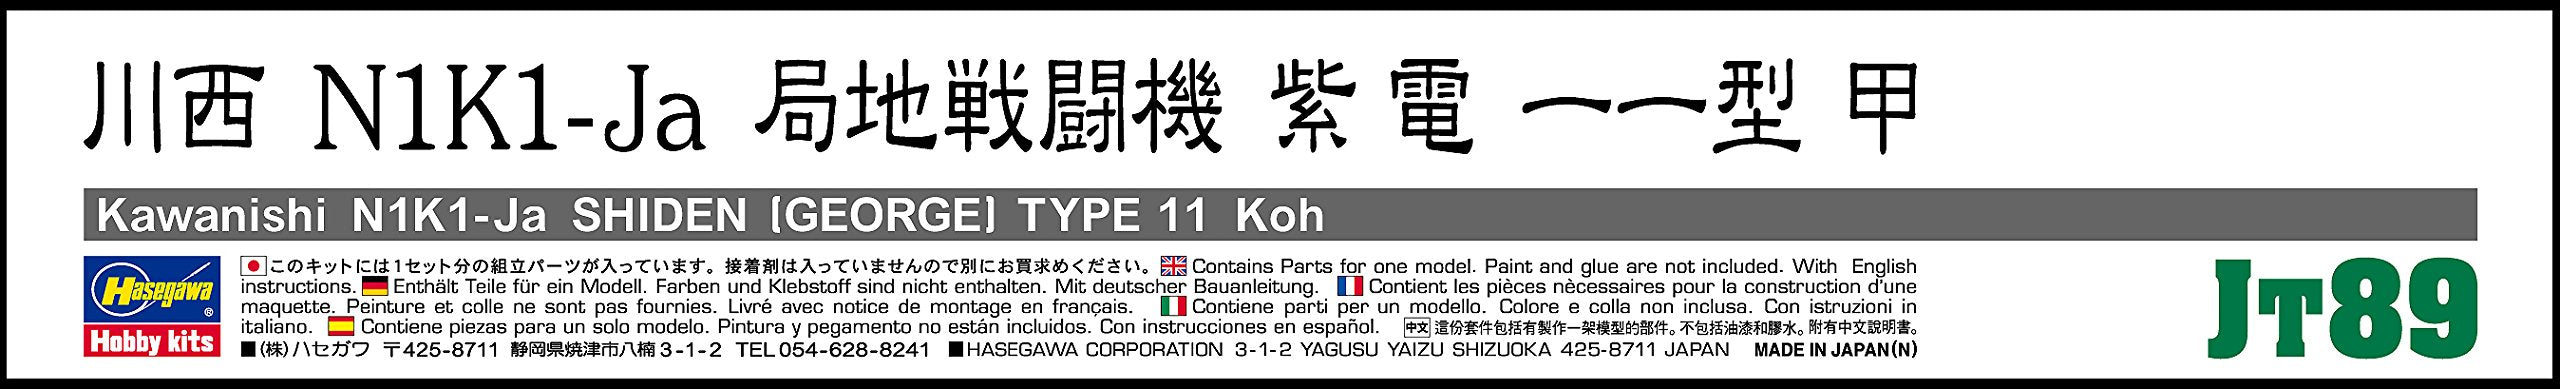 HASEGAWA Jt89 Kawanishi N1K1-Ja Shiden George 1/48 Scale Kit